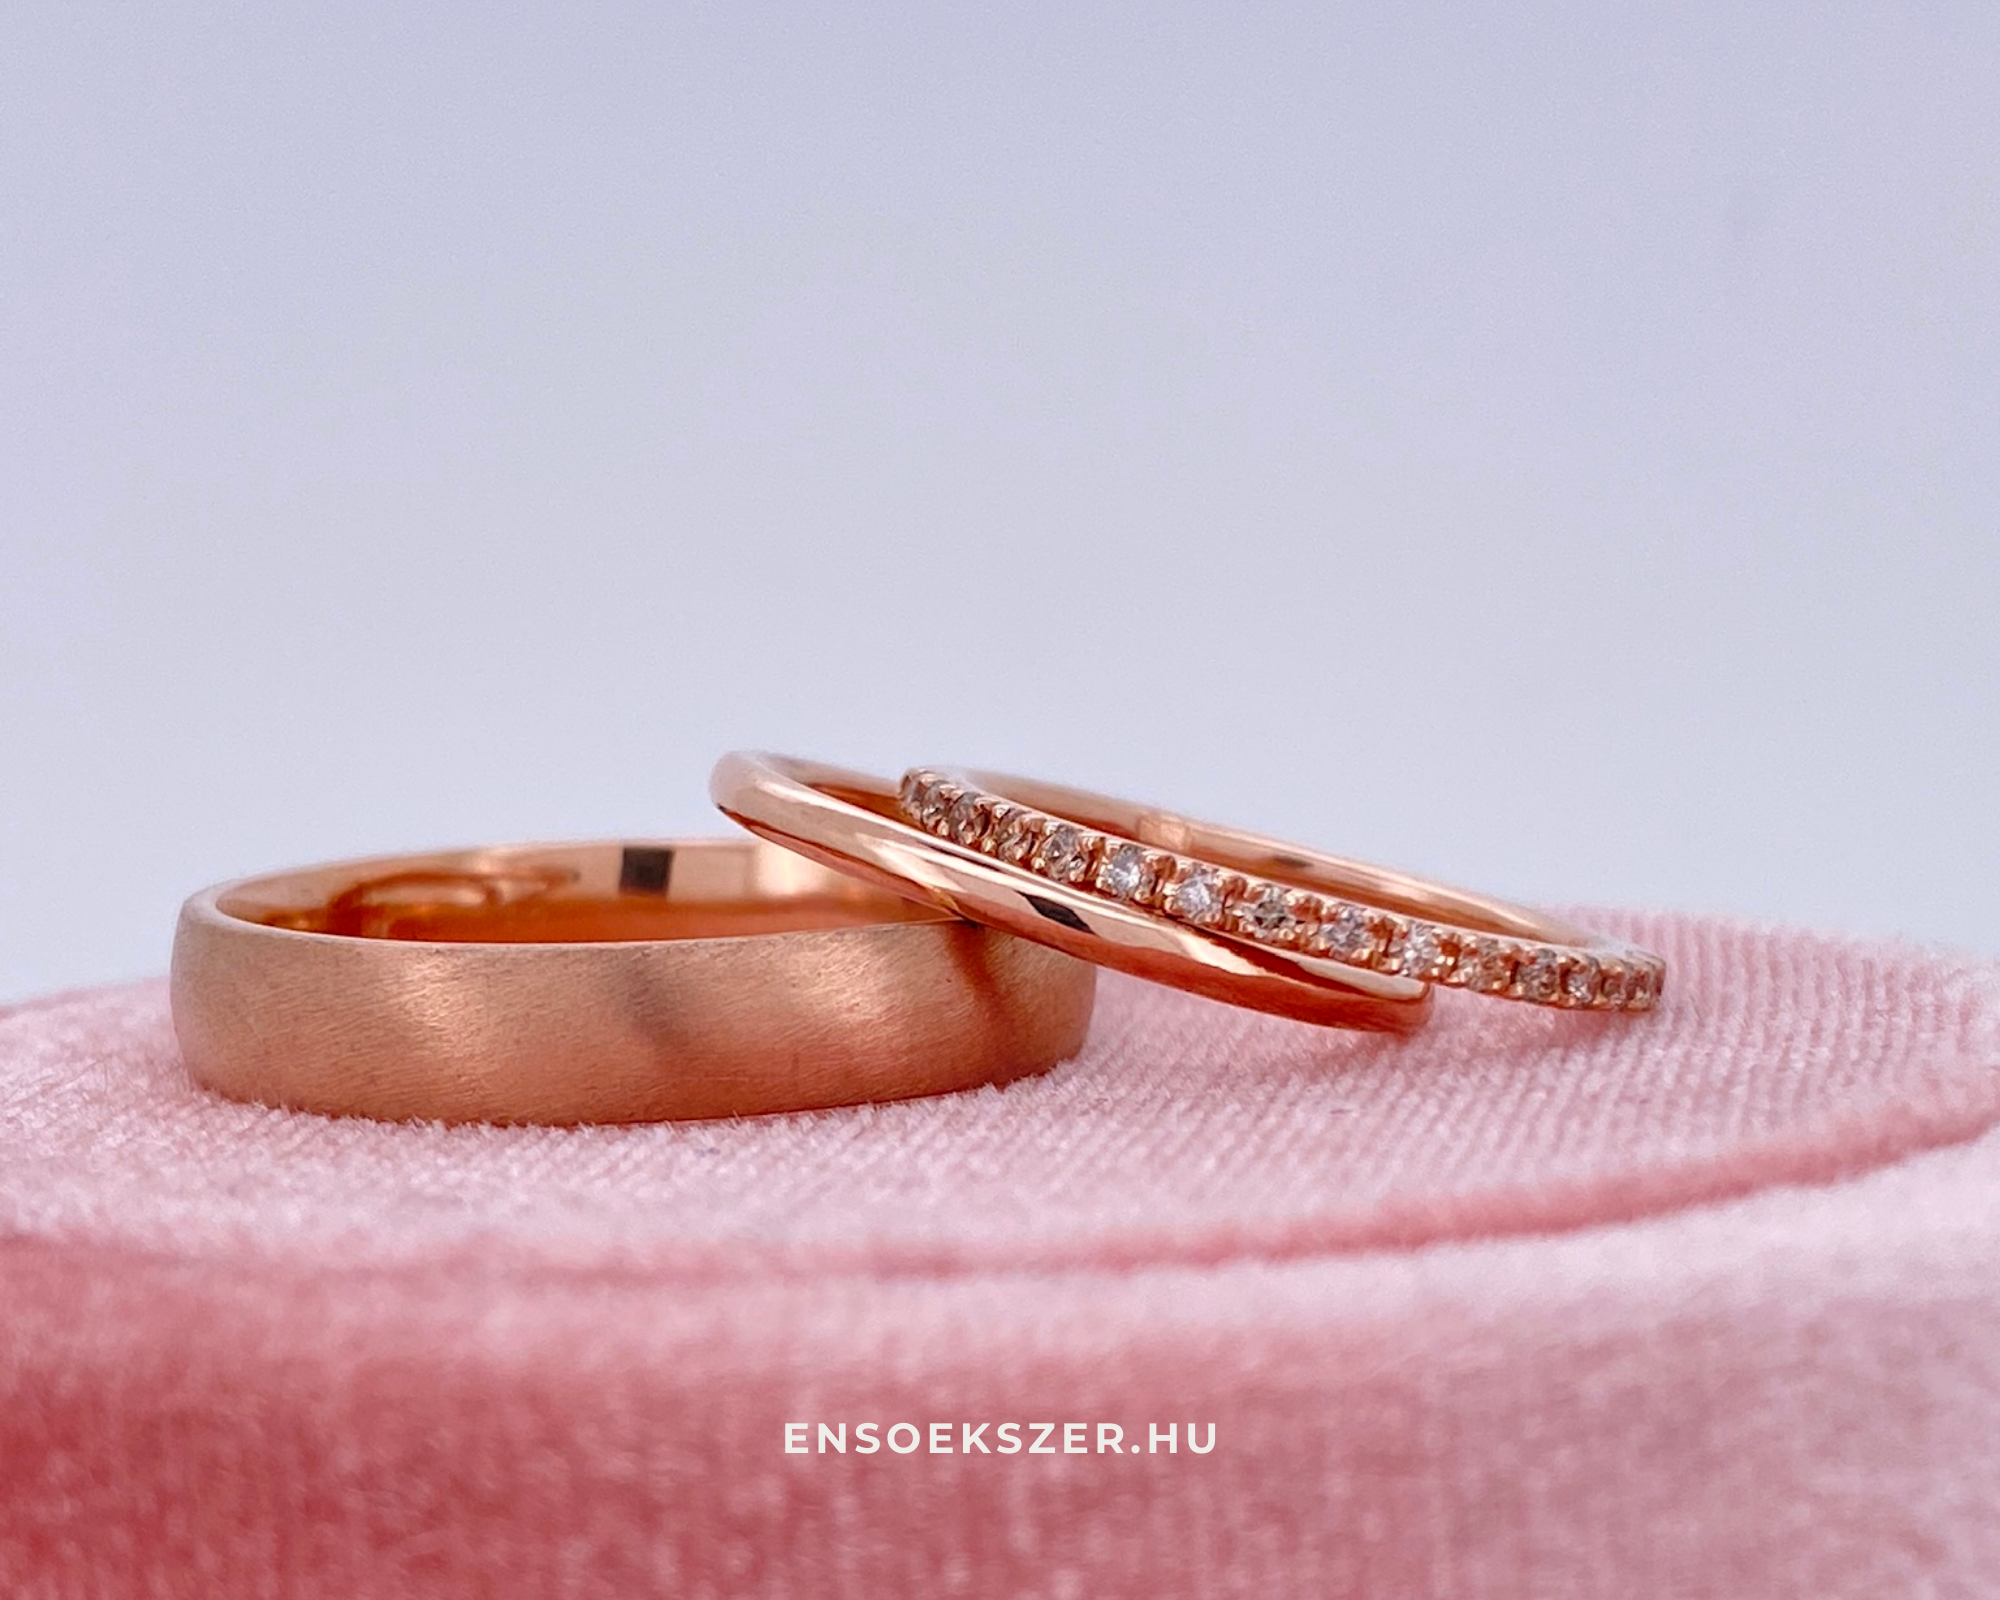 Enso ékszer egyedi tervezésű vörös arany karikagyűrű pár